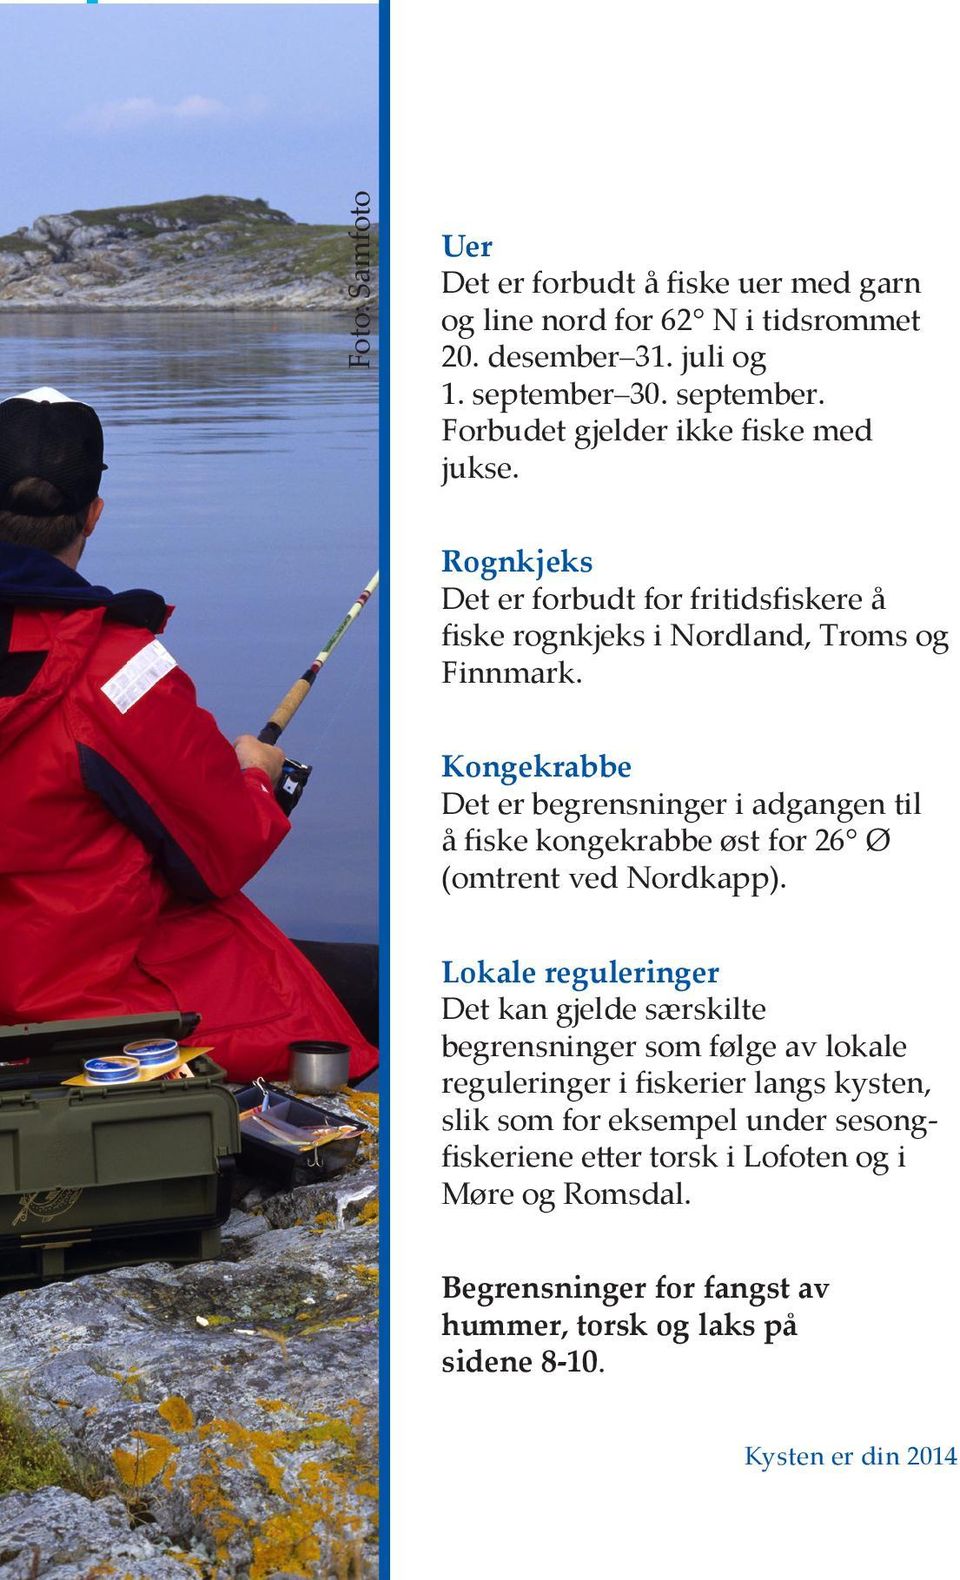 Kongekrabbe Det er begrensninger i adgangen til å fiske kongekrabbe øst for 26 Ø (omtrent ved Nordkapp).